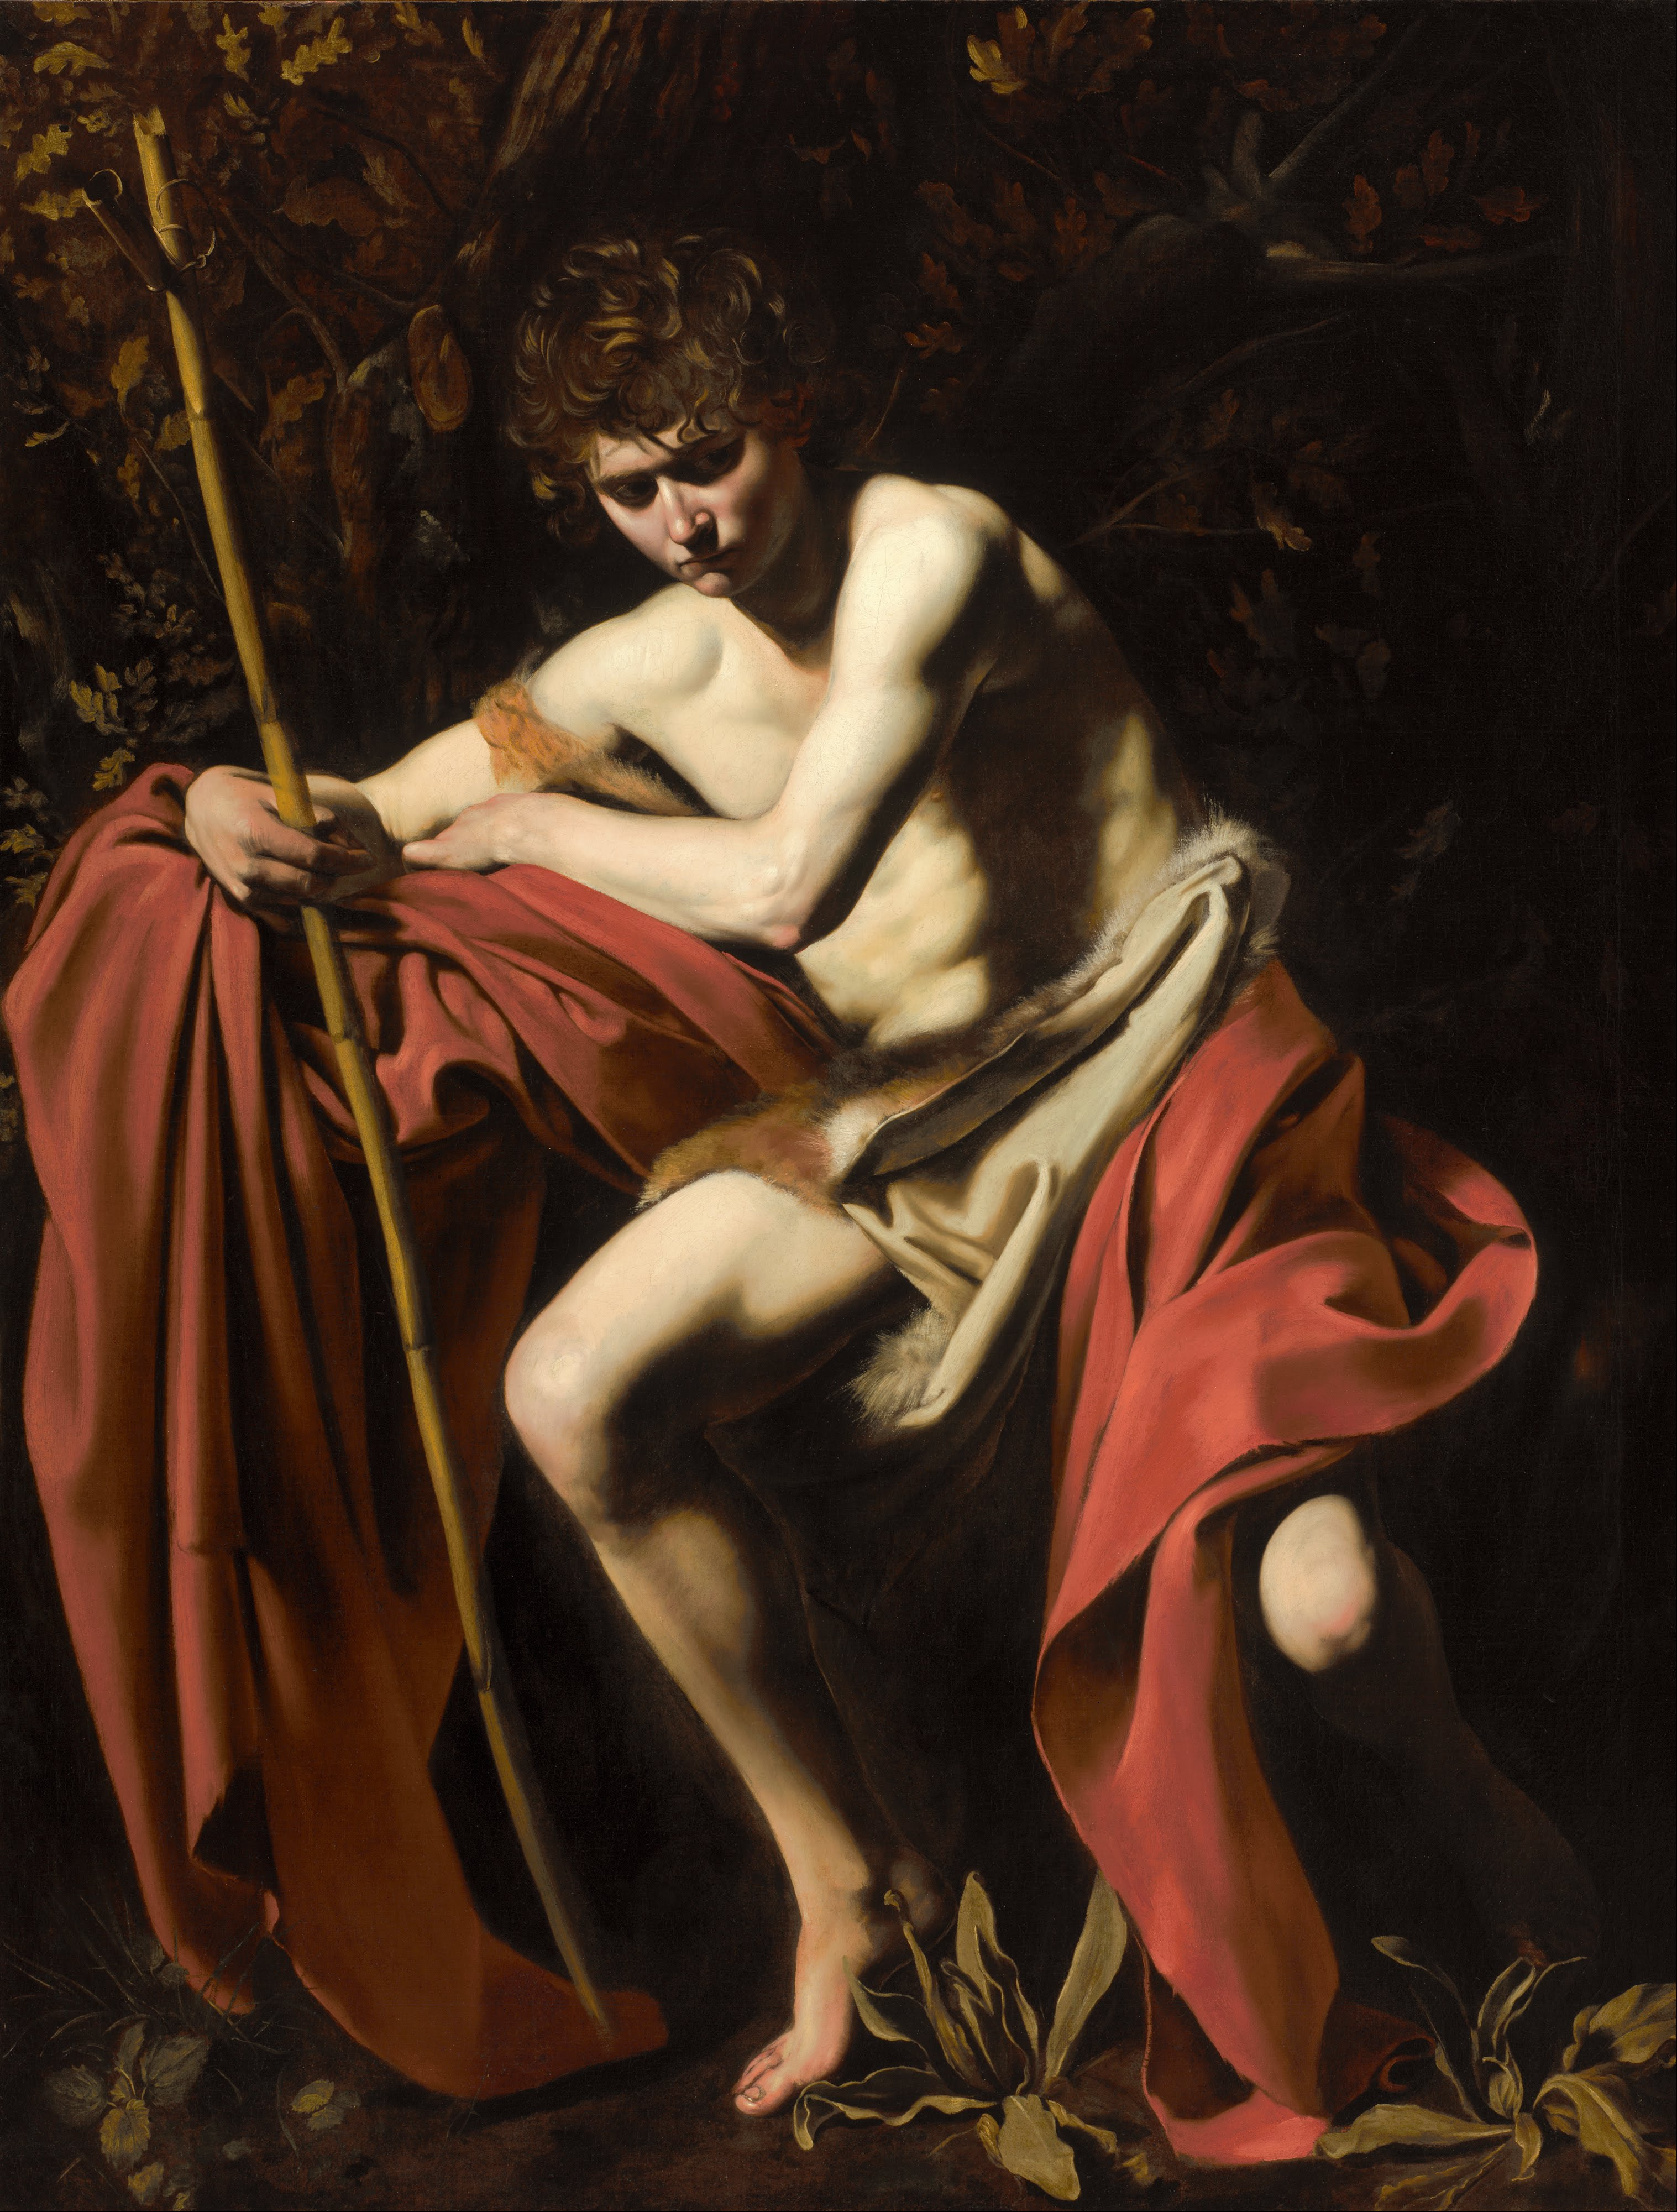 Keresztelő Szent János a vadonban by  Caravaggio - kb. 1604 - 172.72 x 132.08 cm 